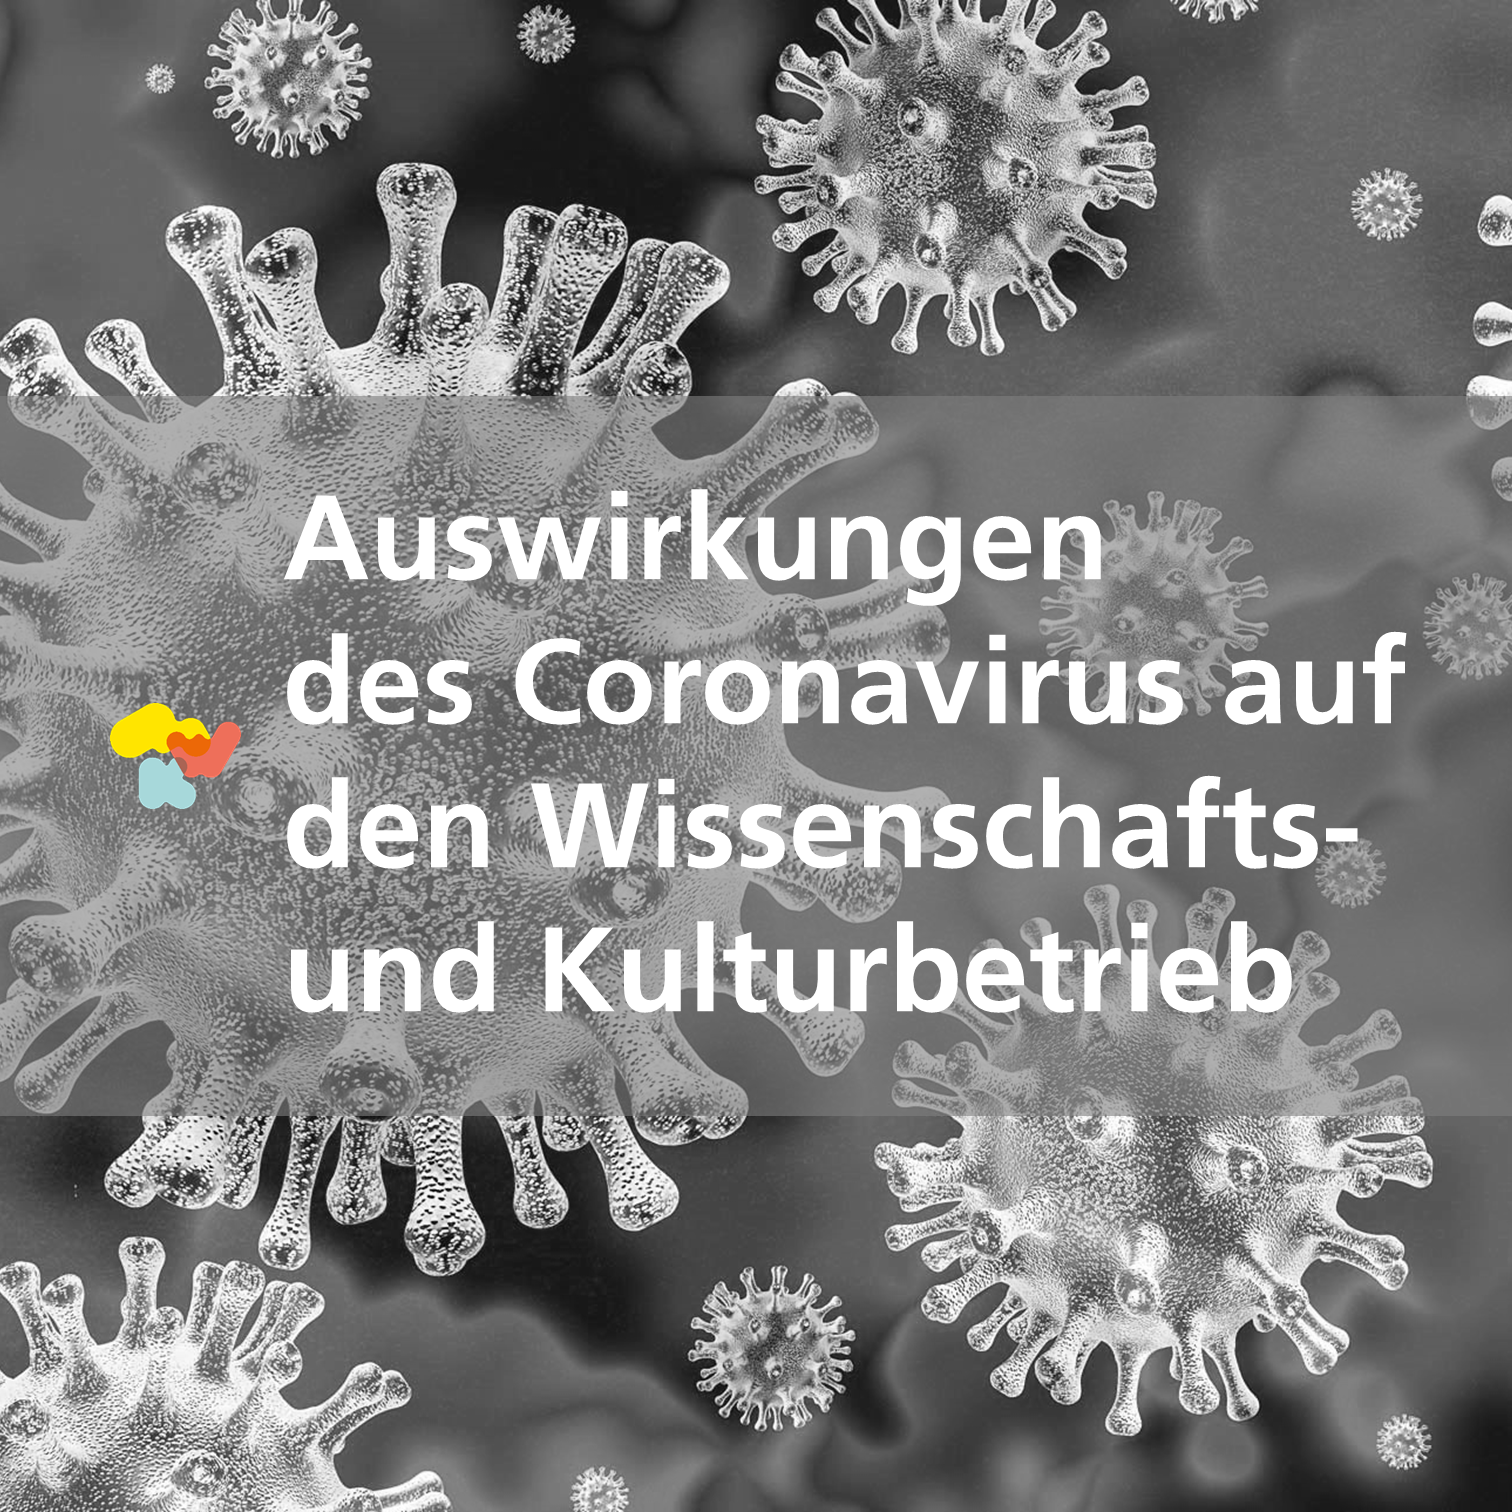 Schmuckbild: Teaser für Informationen des MWK zu den Auswirkungen der Coronavirus-Pandemie auf den Wissenschafts- und Kulturbetrieb in Niedersachsen